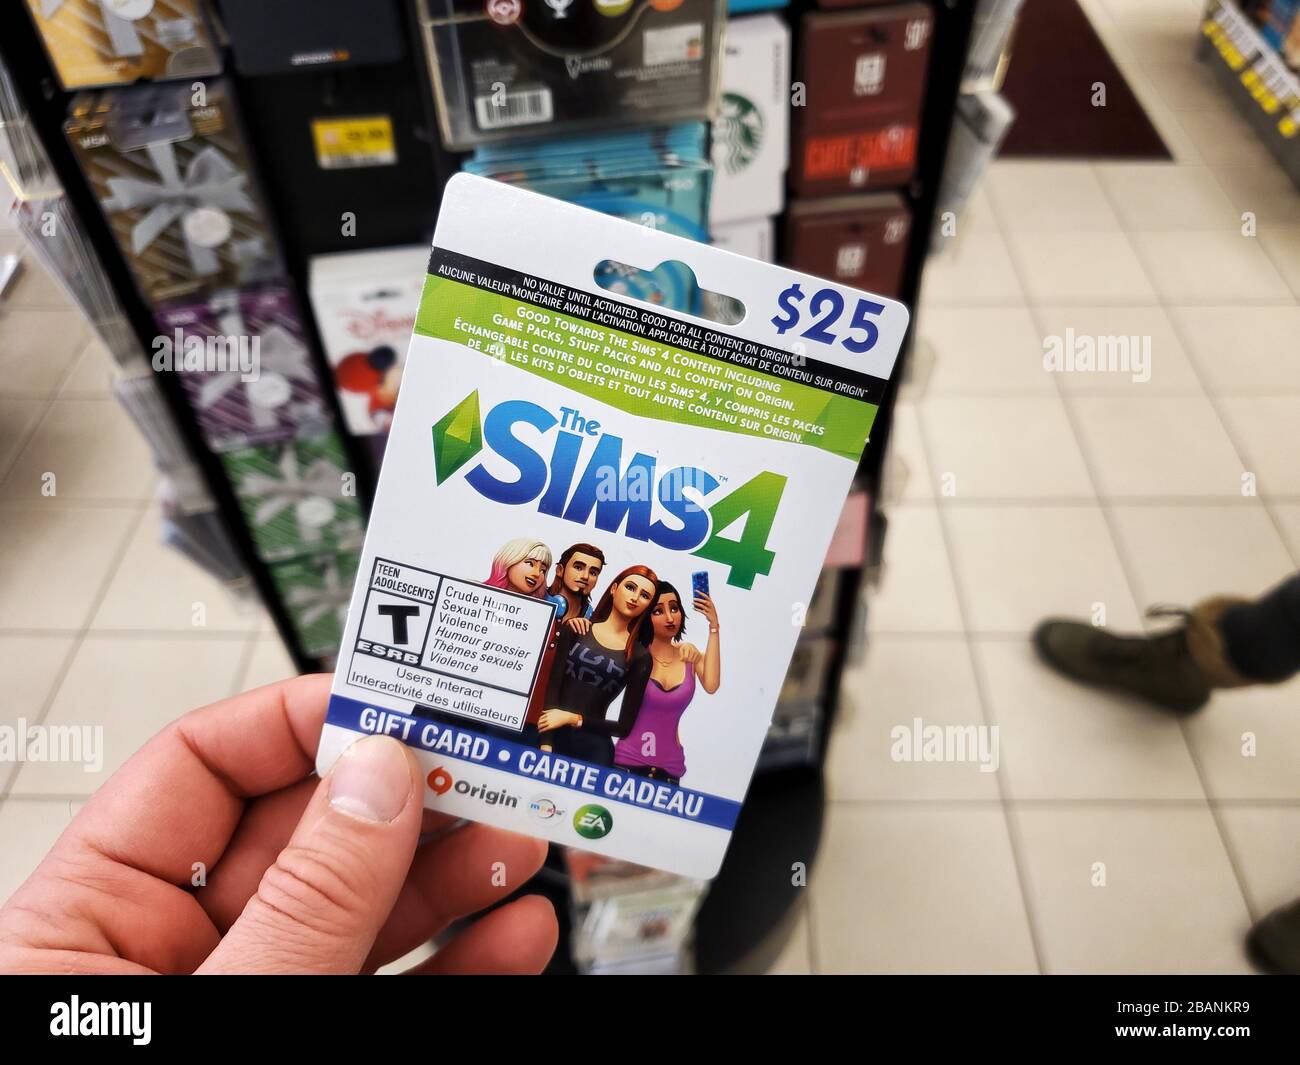 Montreal, Canadá - 22 de marzo de 2020: SIMS 4 tarjeta regalo en una mano  sobre tarjetas regalo antecedentes. El Sims 4 es un videojuego de  simulación de vida 2014 desarrollado por Fotografía de stock - Alamy